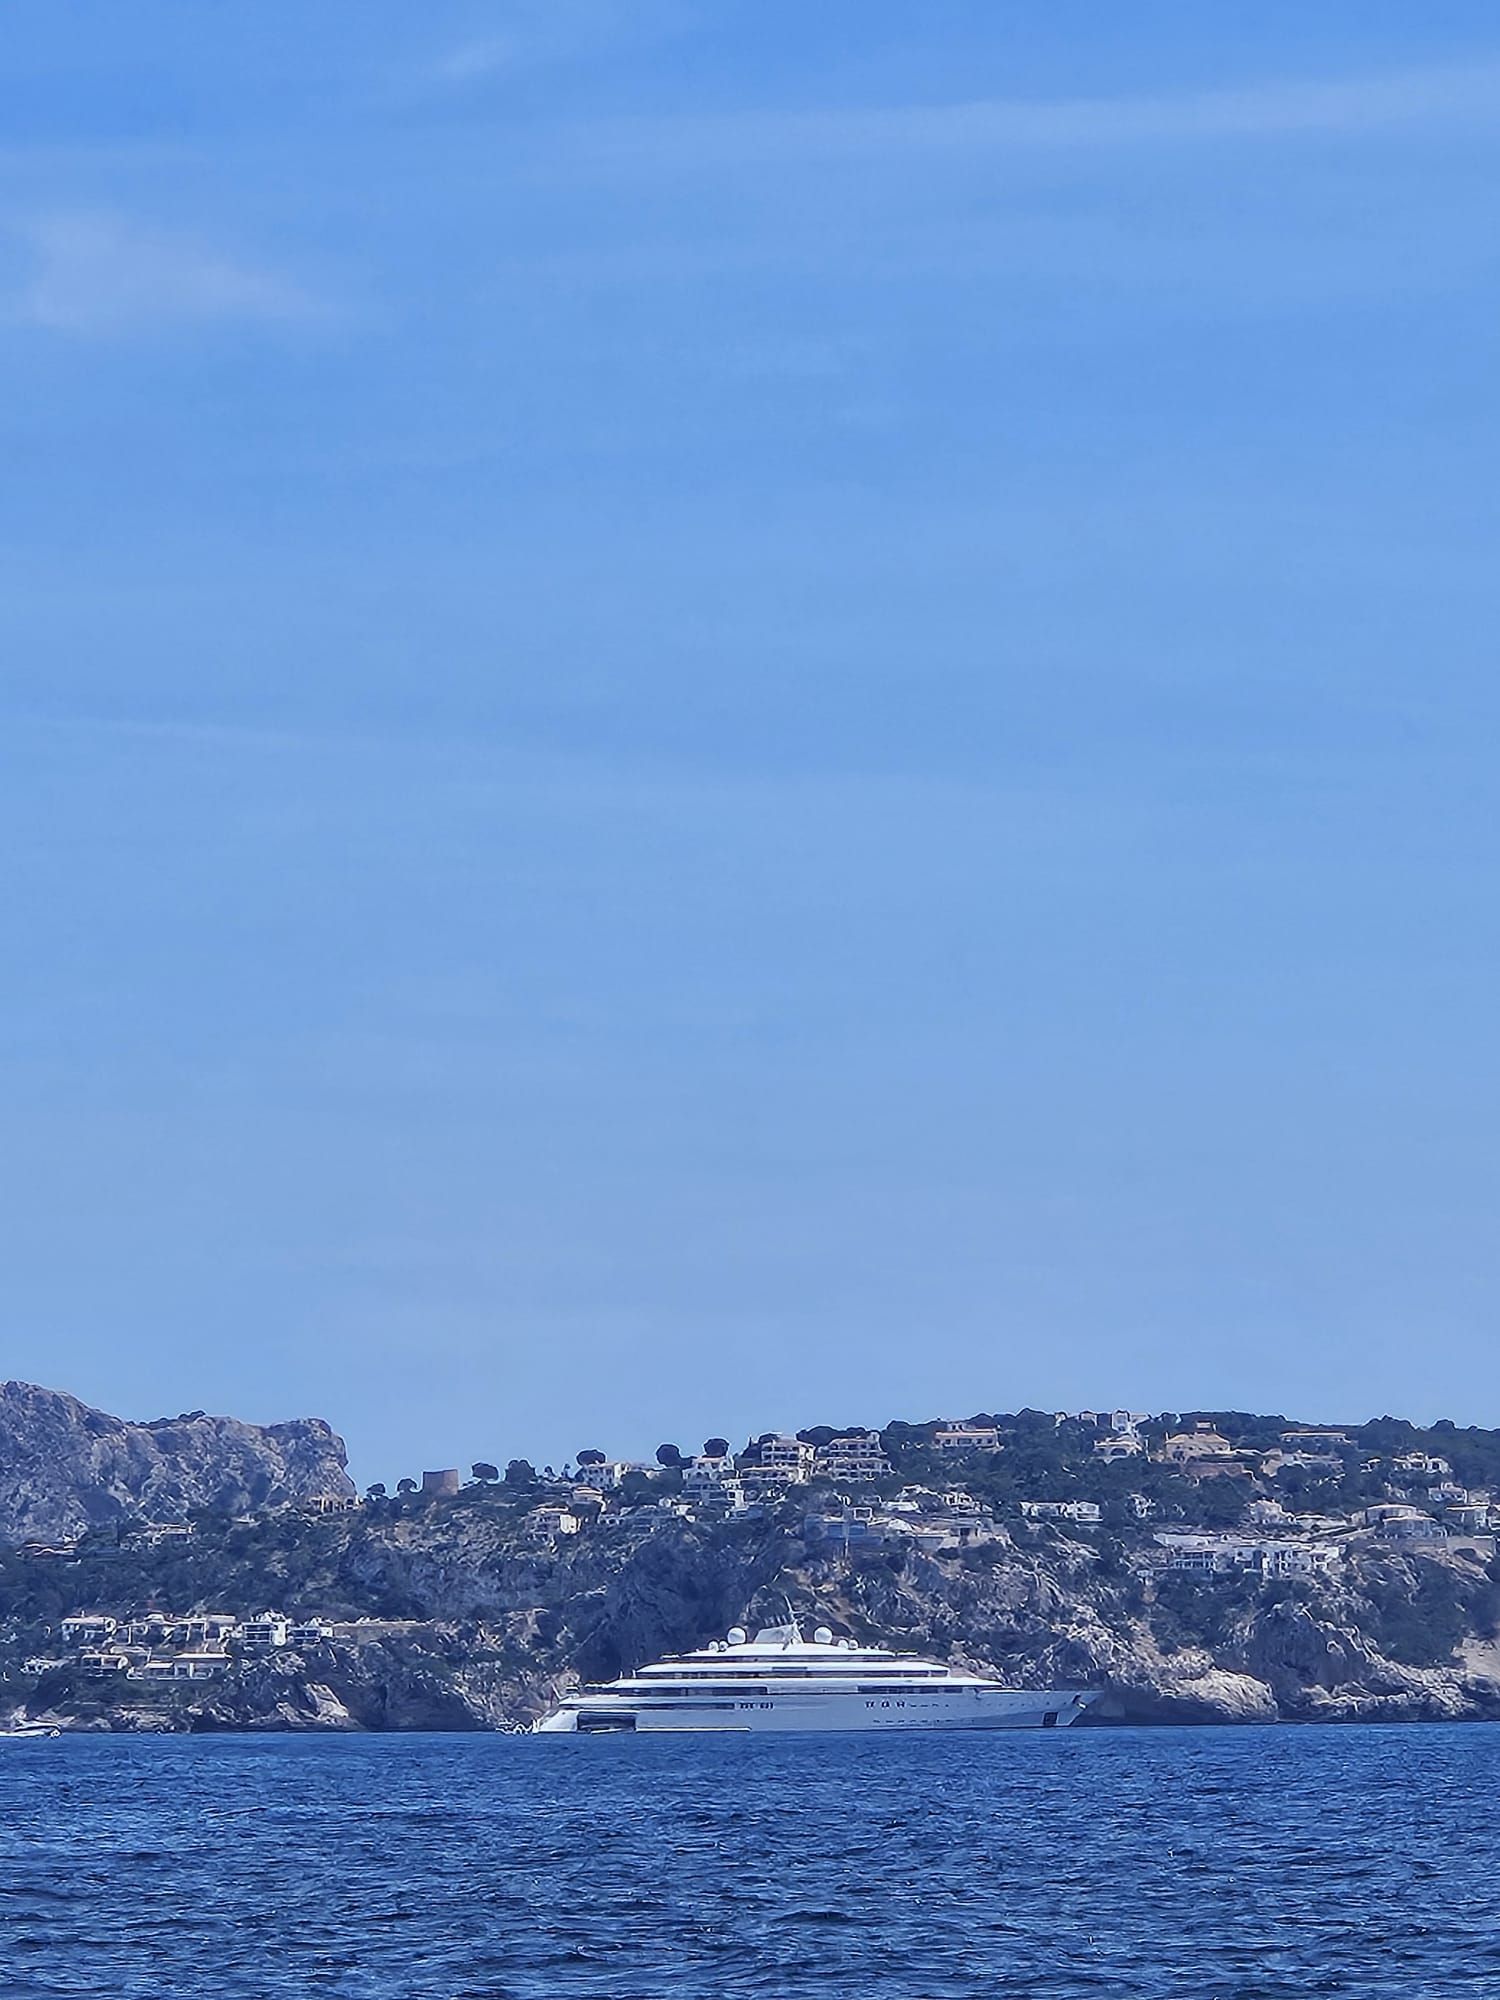 Yates en Mallorca: Las fotos de la llegada a a la isla del megayate Golden Odyssey